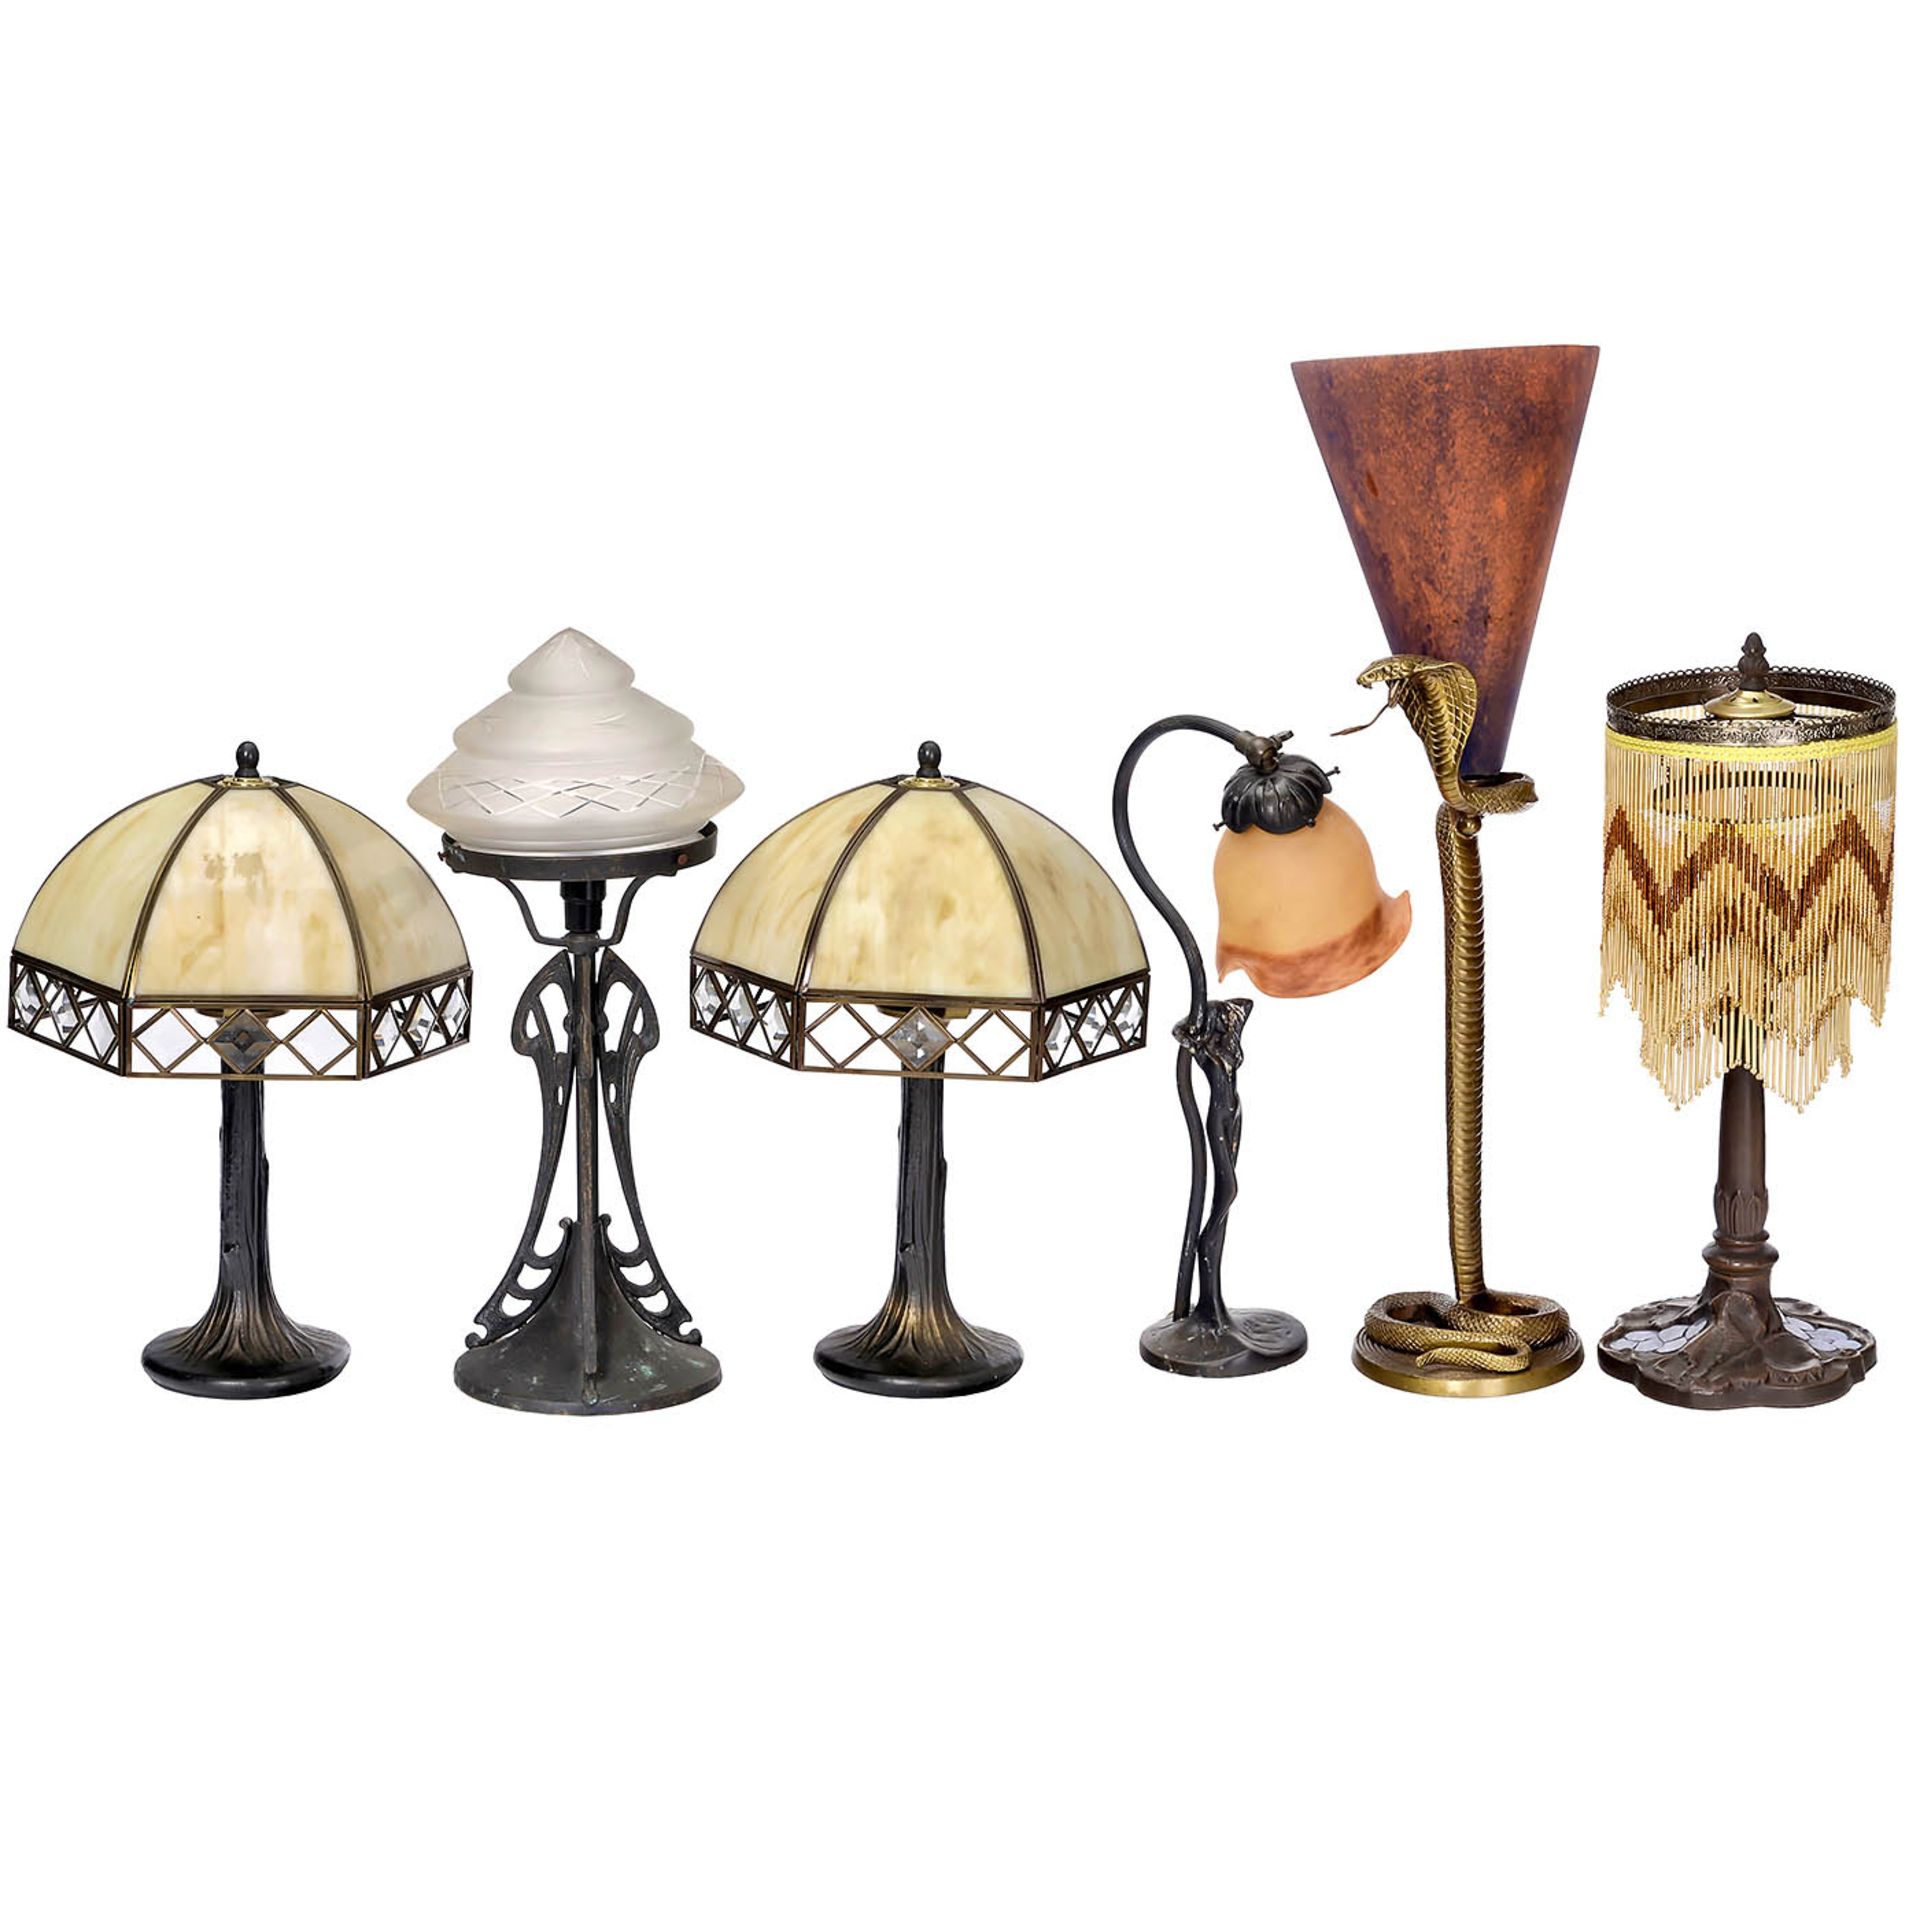 6 Art-Nouveau and Art-Deco-Style Table Lamps, c. 1980 - Bild 2 aus 4